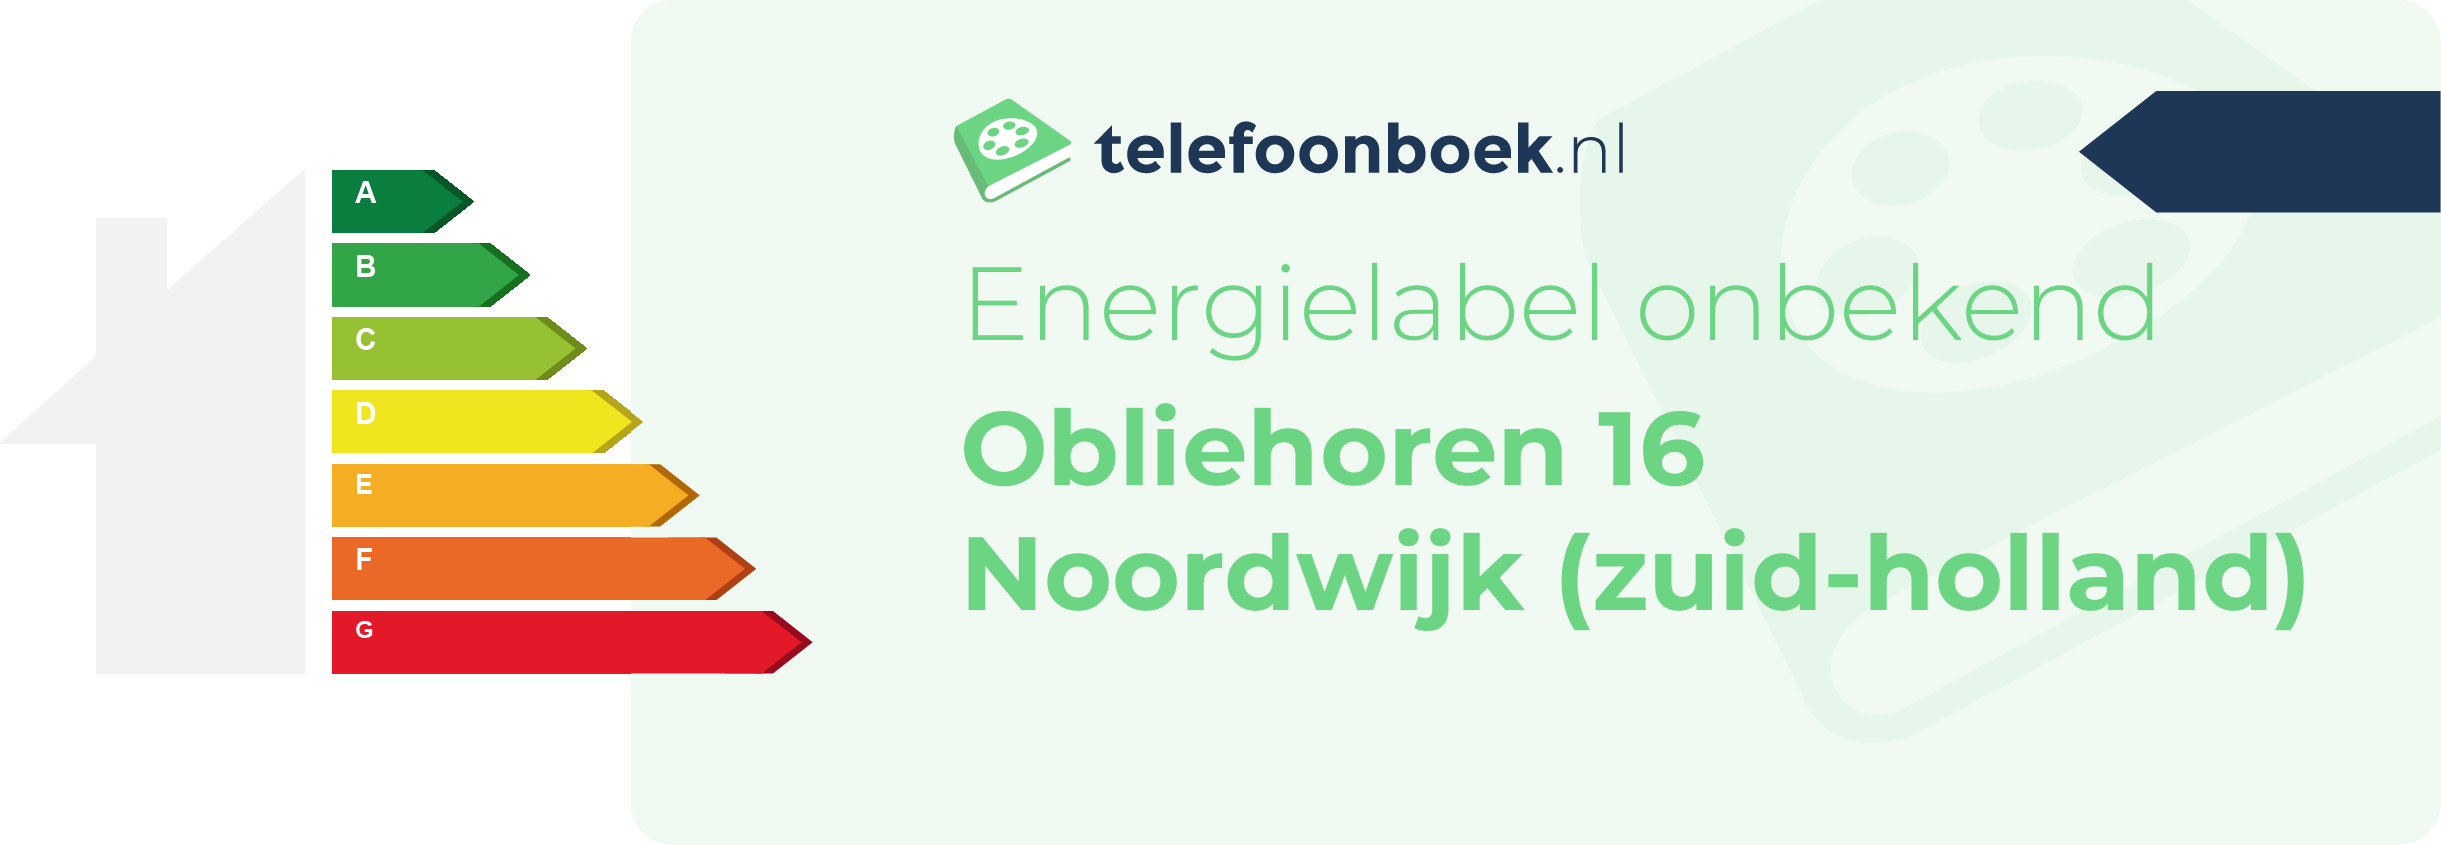 Energielabel Obliehoren 16 Noordwijk (Zuid-Holland)